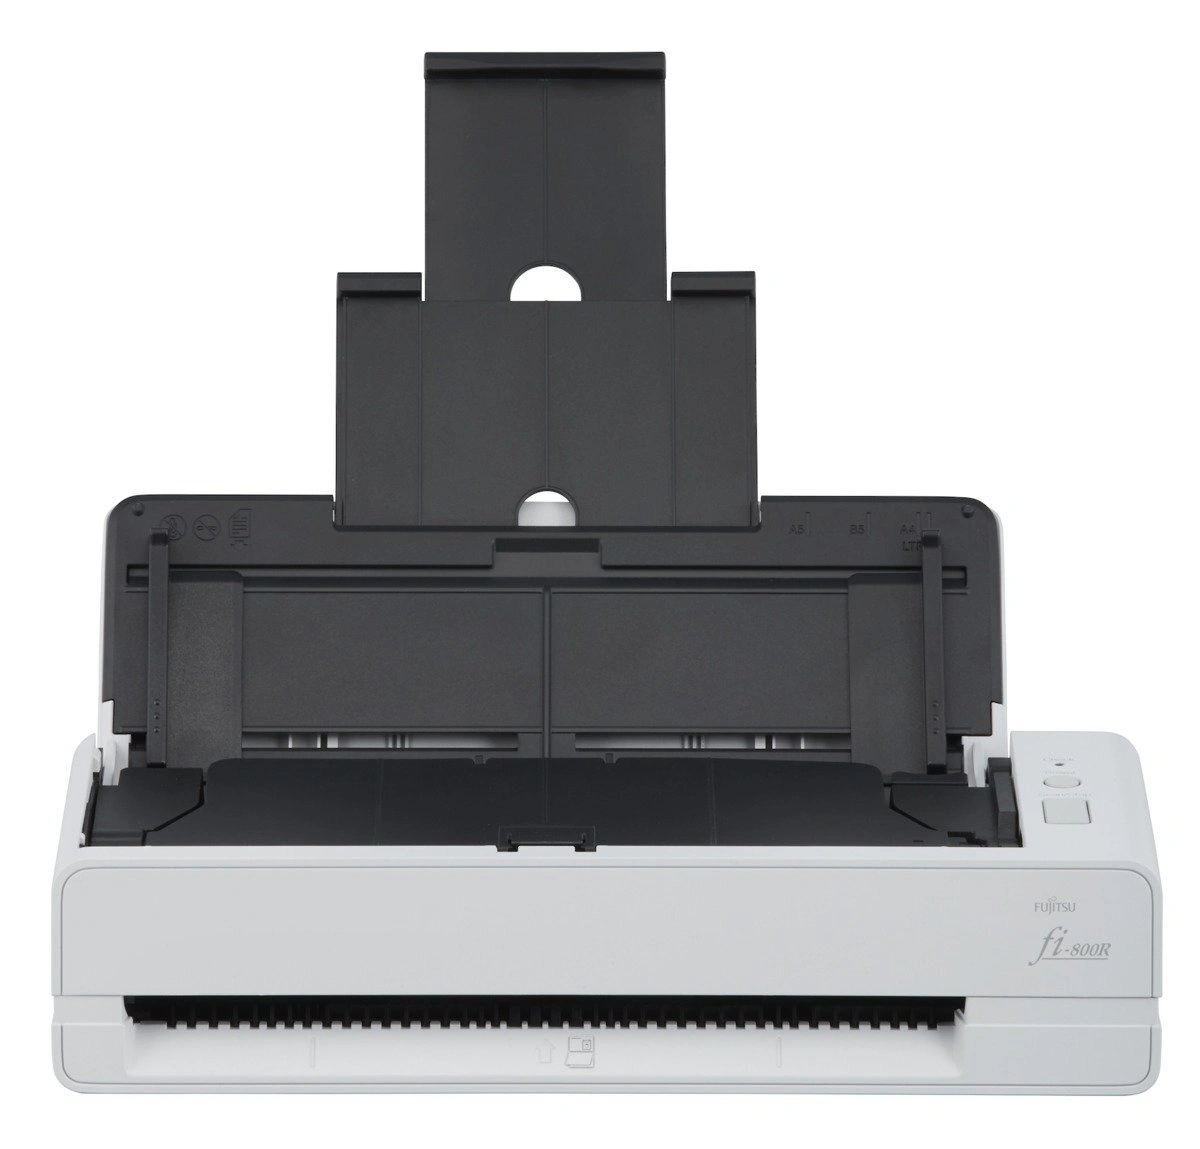 Документ сканер Fujitsu fi-800R А4, двухсторонний, 40 стр/мин, автопод. 20 листов + однолистовая подача (затягивание и возврат), USB 3.2 Gen 1 PA03795-B001